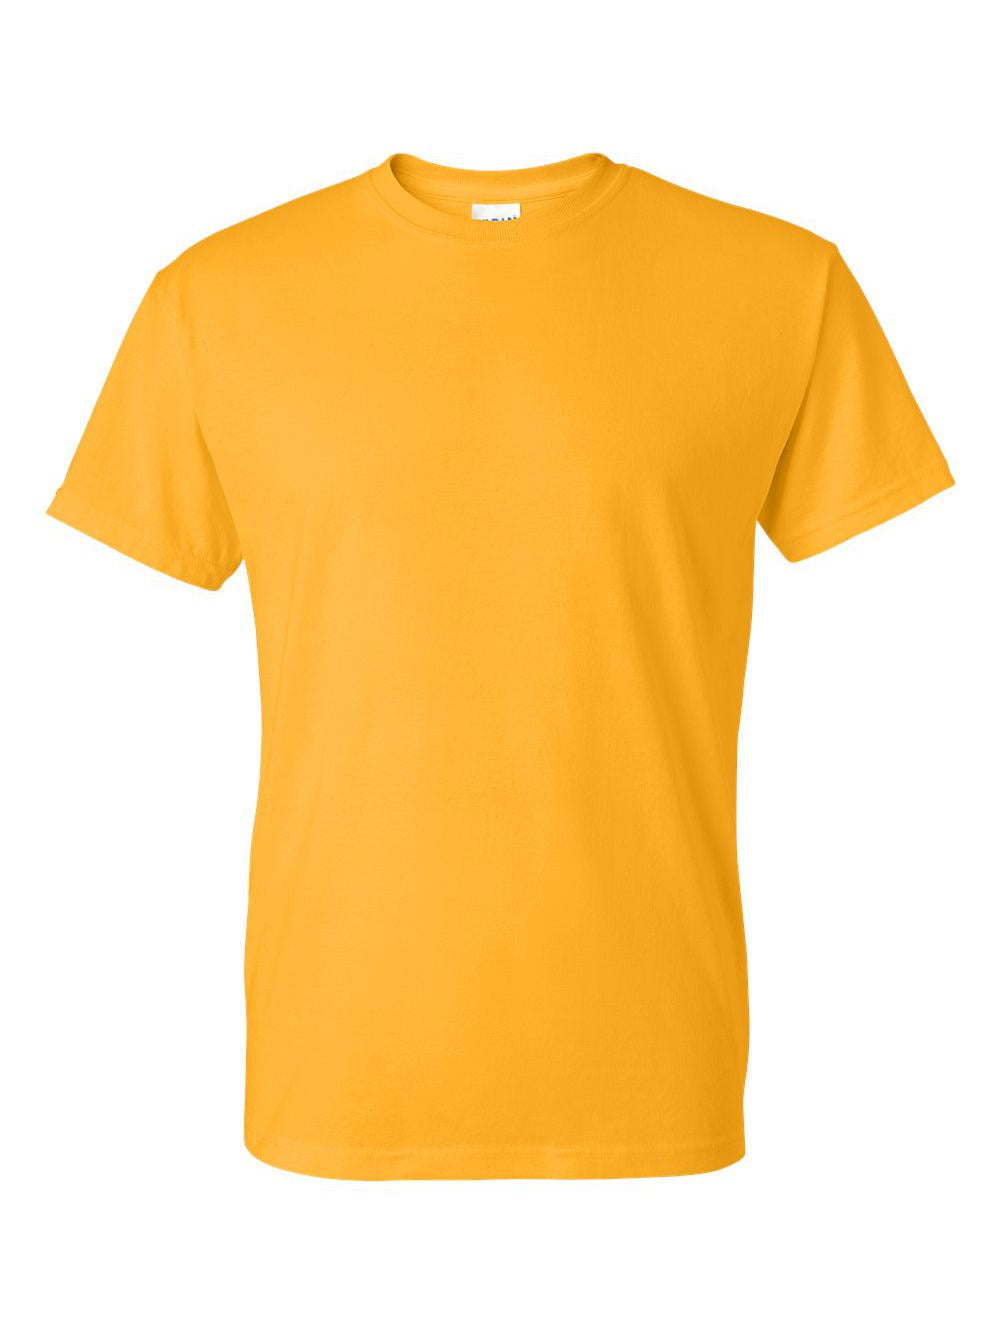 Gildan Men's DryBlend T-Shirt - Light Pink - XL - 8000